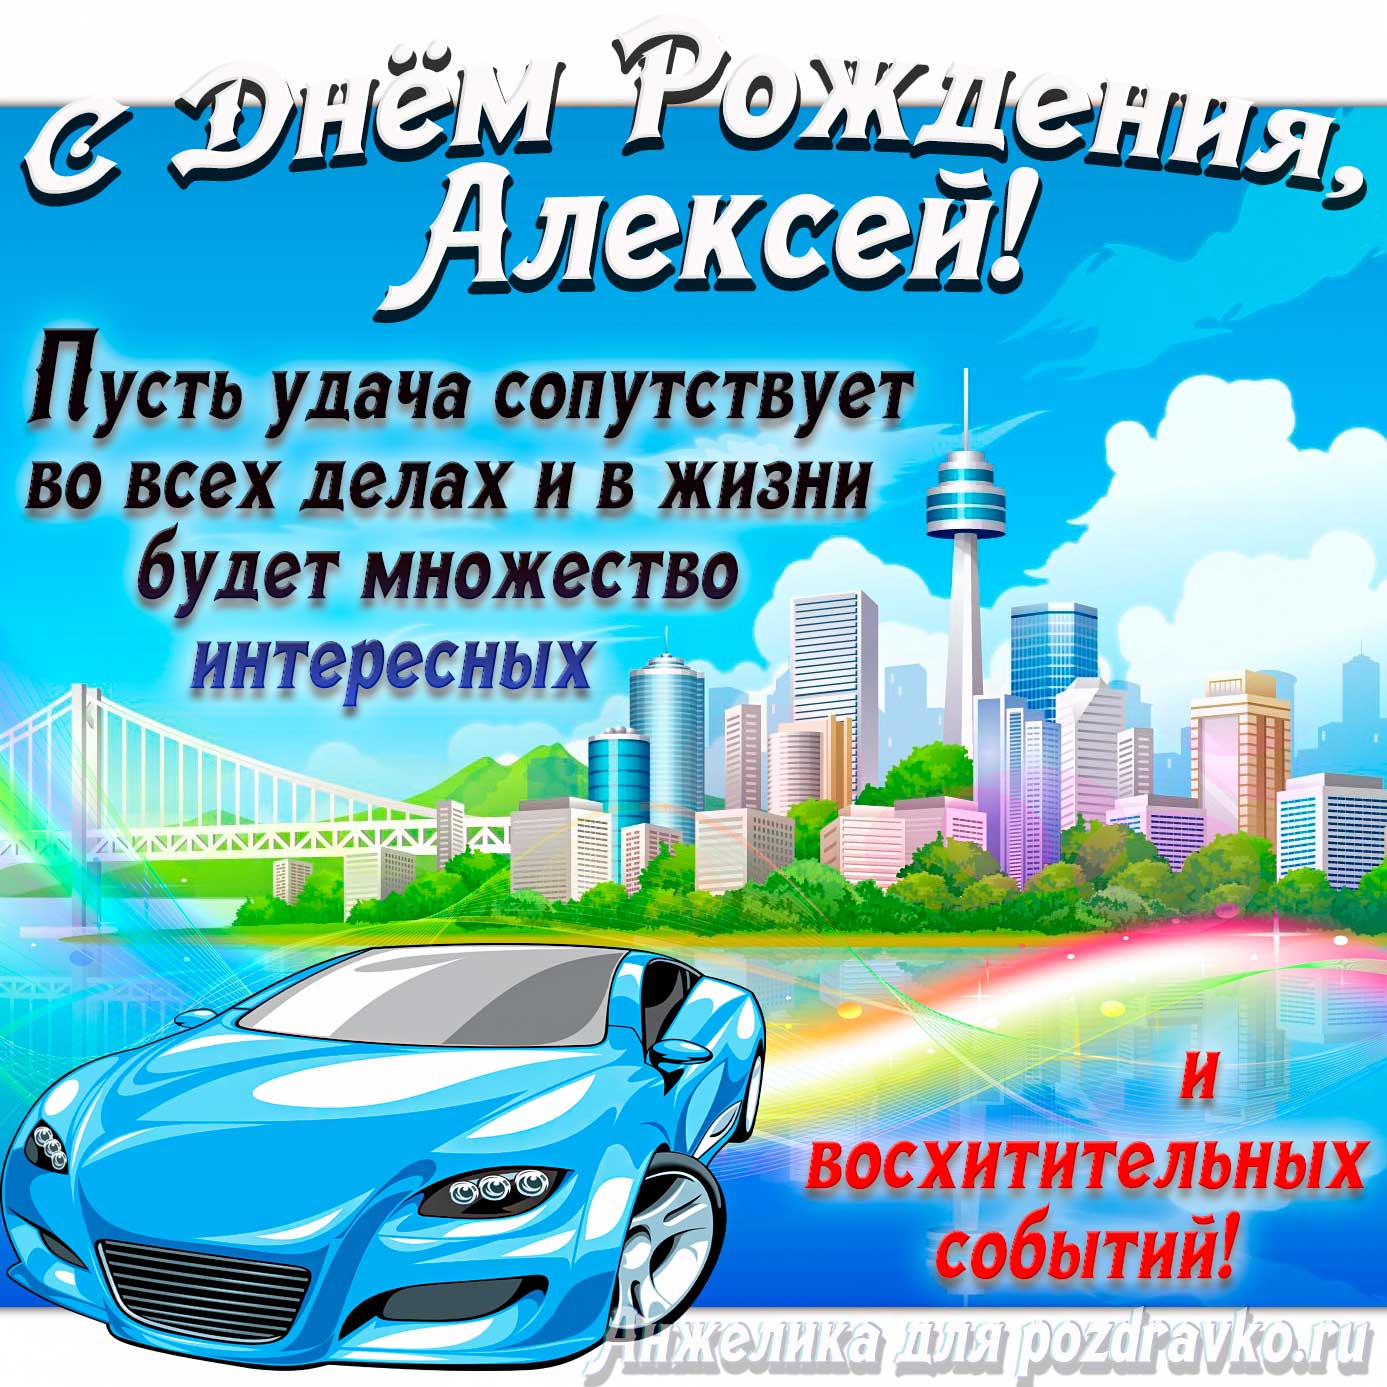 Открытка - с Днём Рождения Алексей с голубой машиной и пожеланием. Скачать бесплатно или отправить картинку.